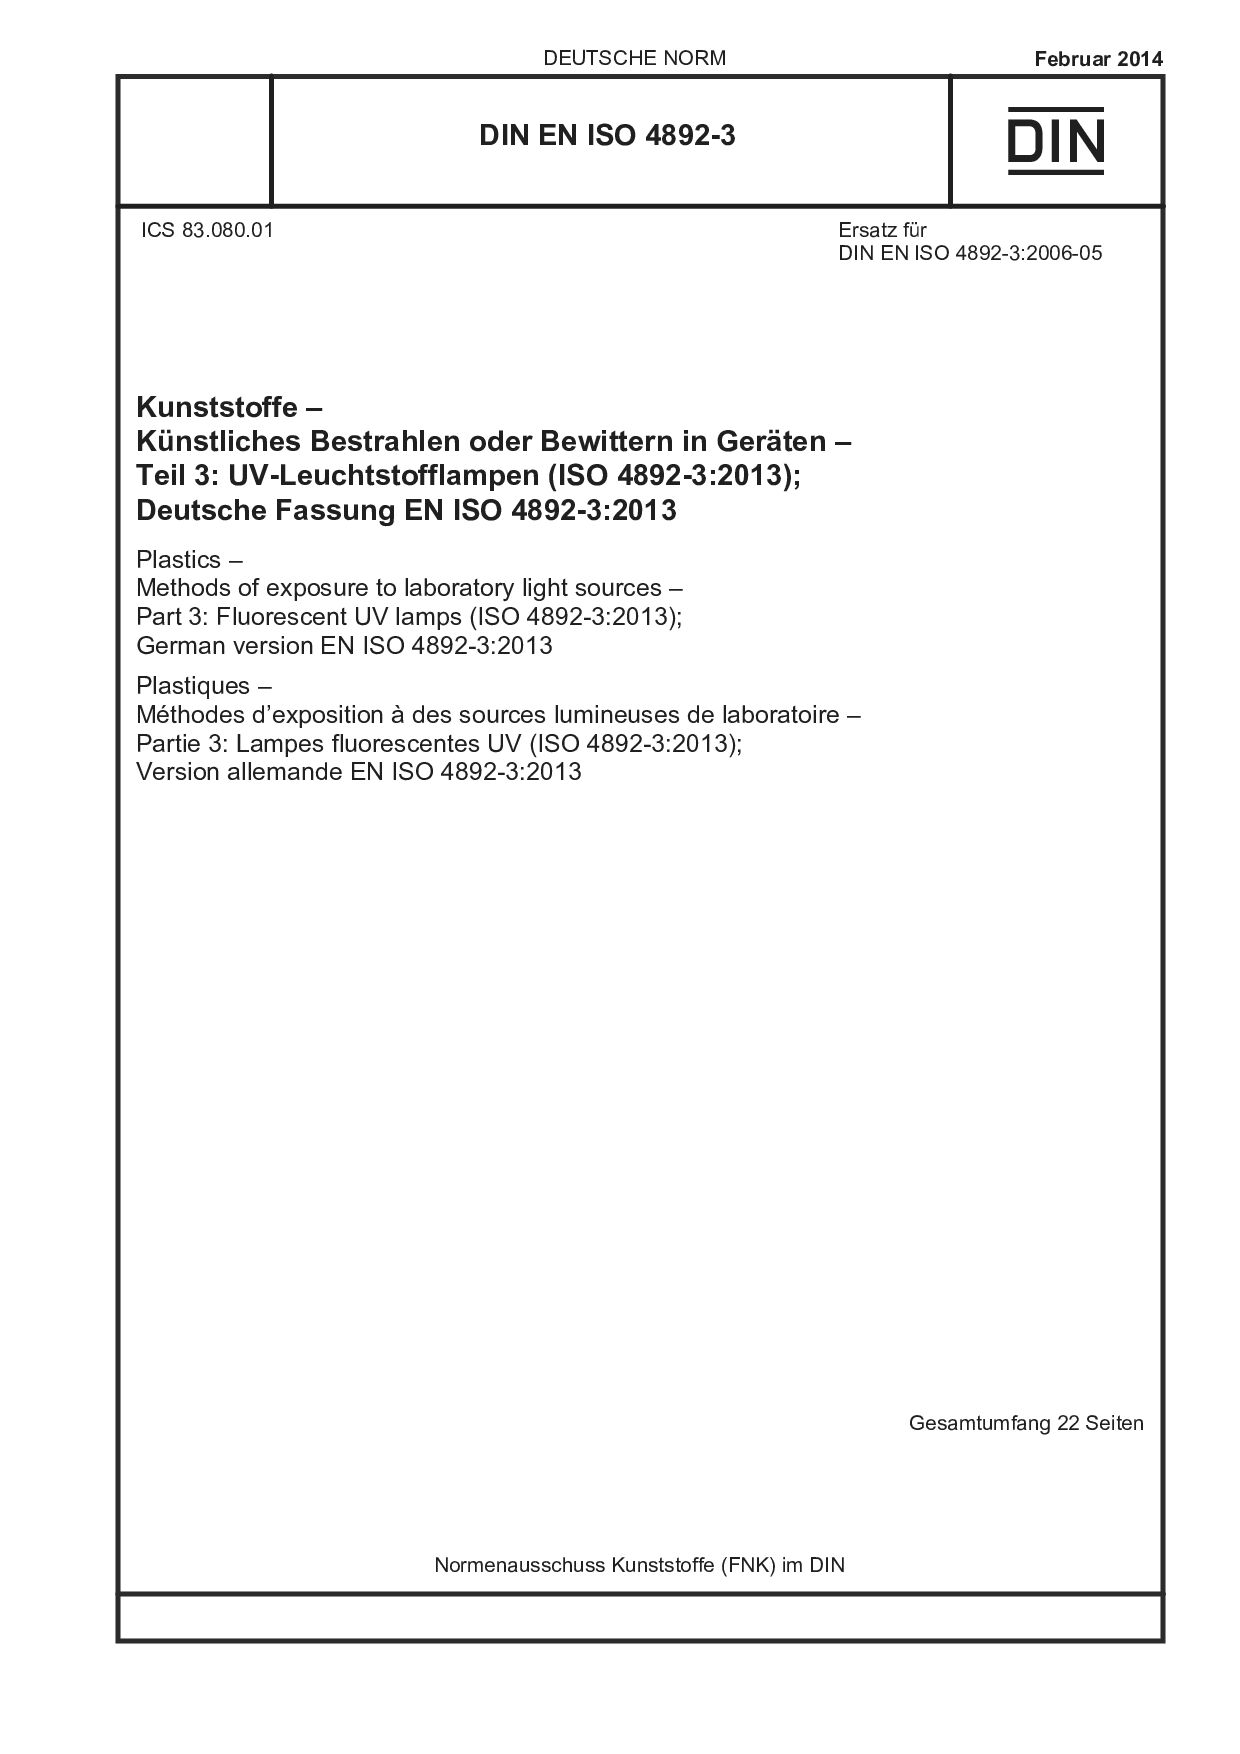 DIN EN ISO 4892-3:2014封面图